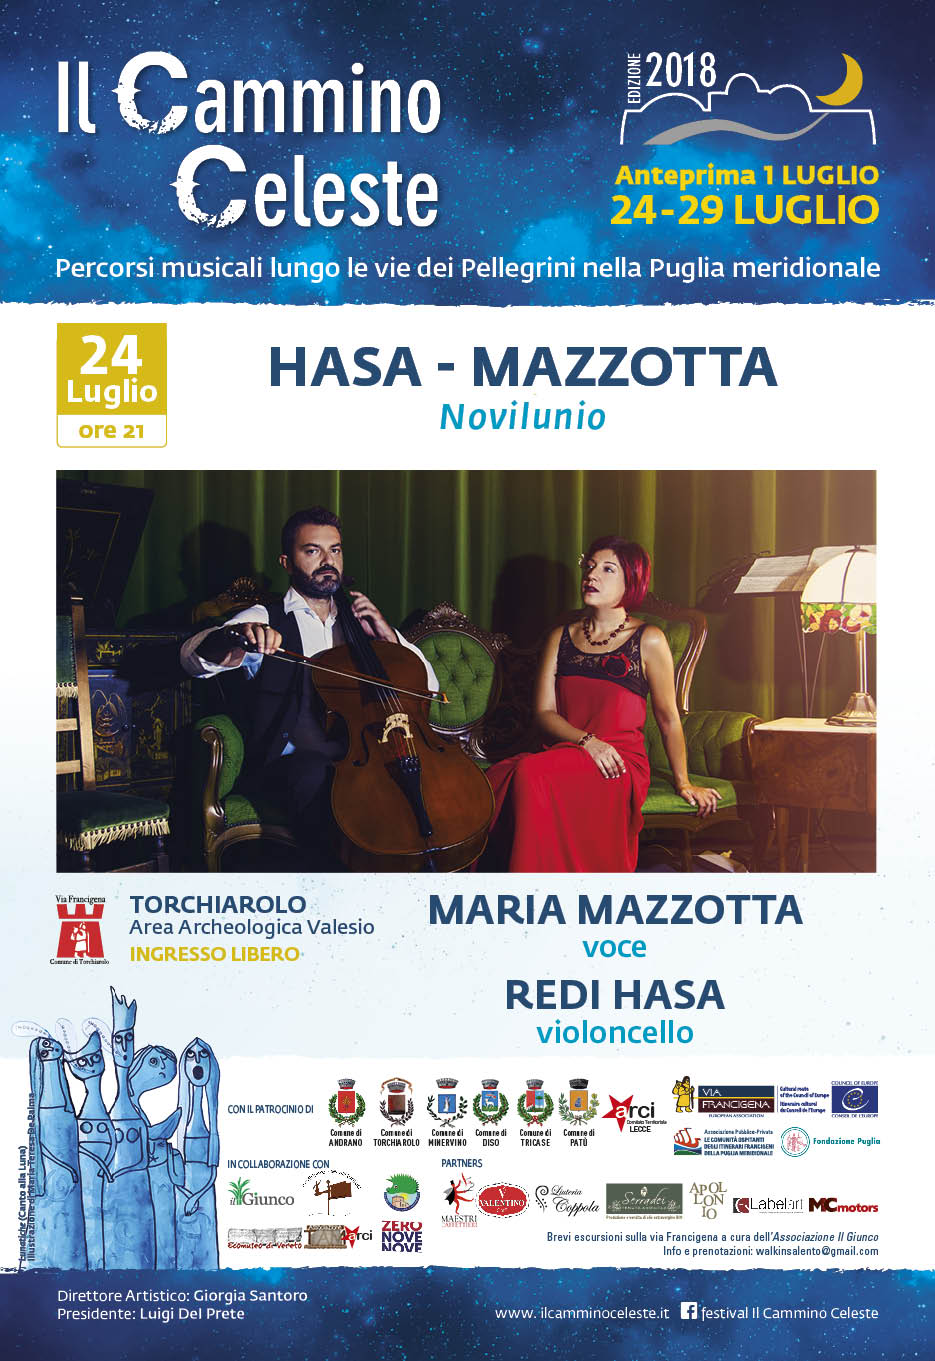 Il duo Hasa-Mazzotta in concerto alle Terme di Valesio per presentare “Novilunio” nella III edizione del Festival 